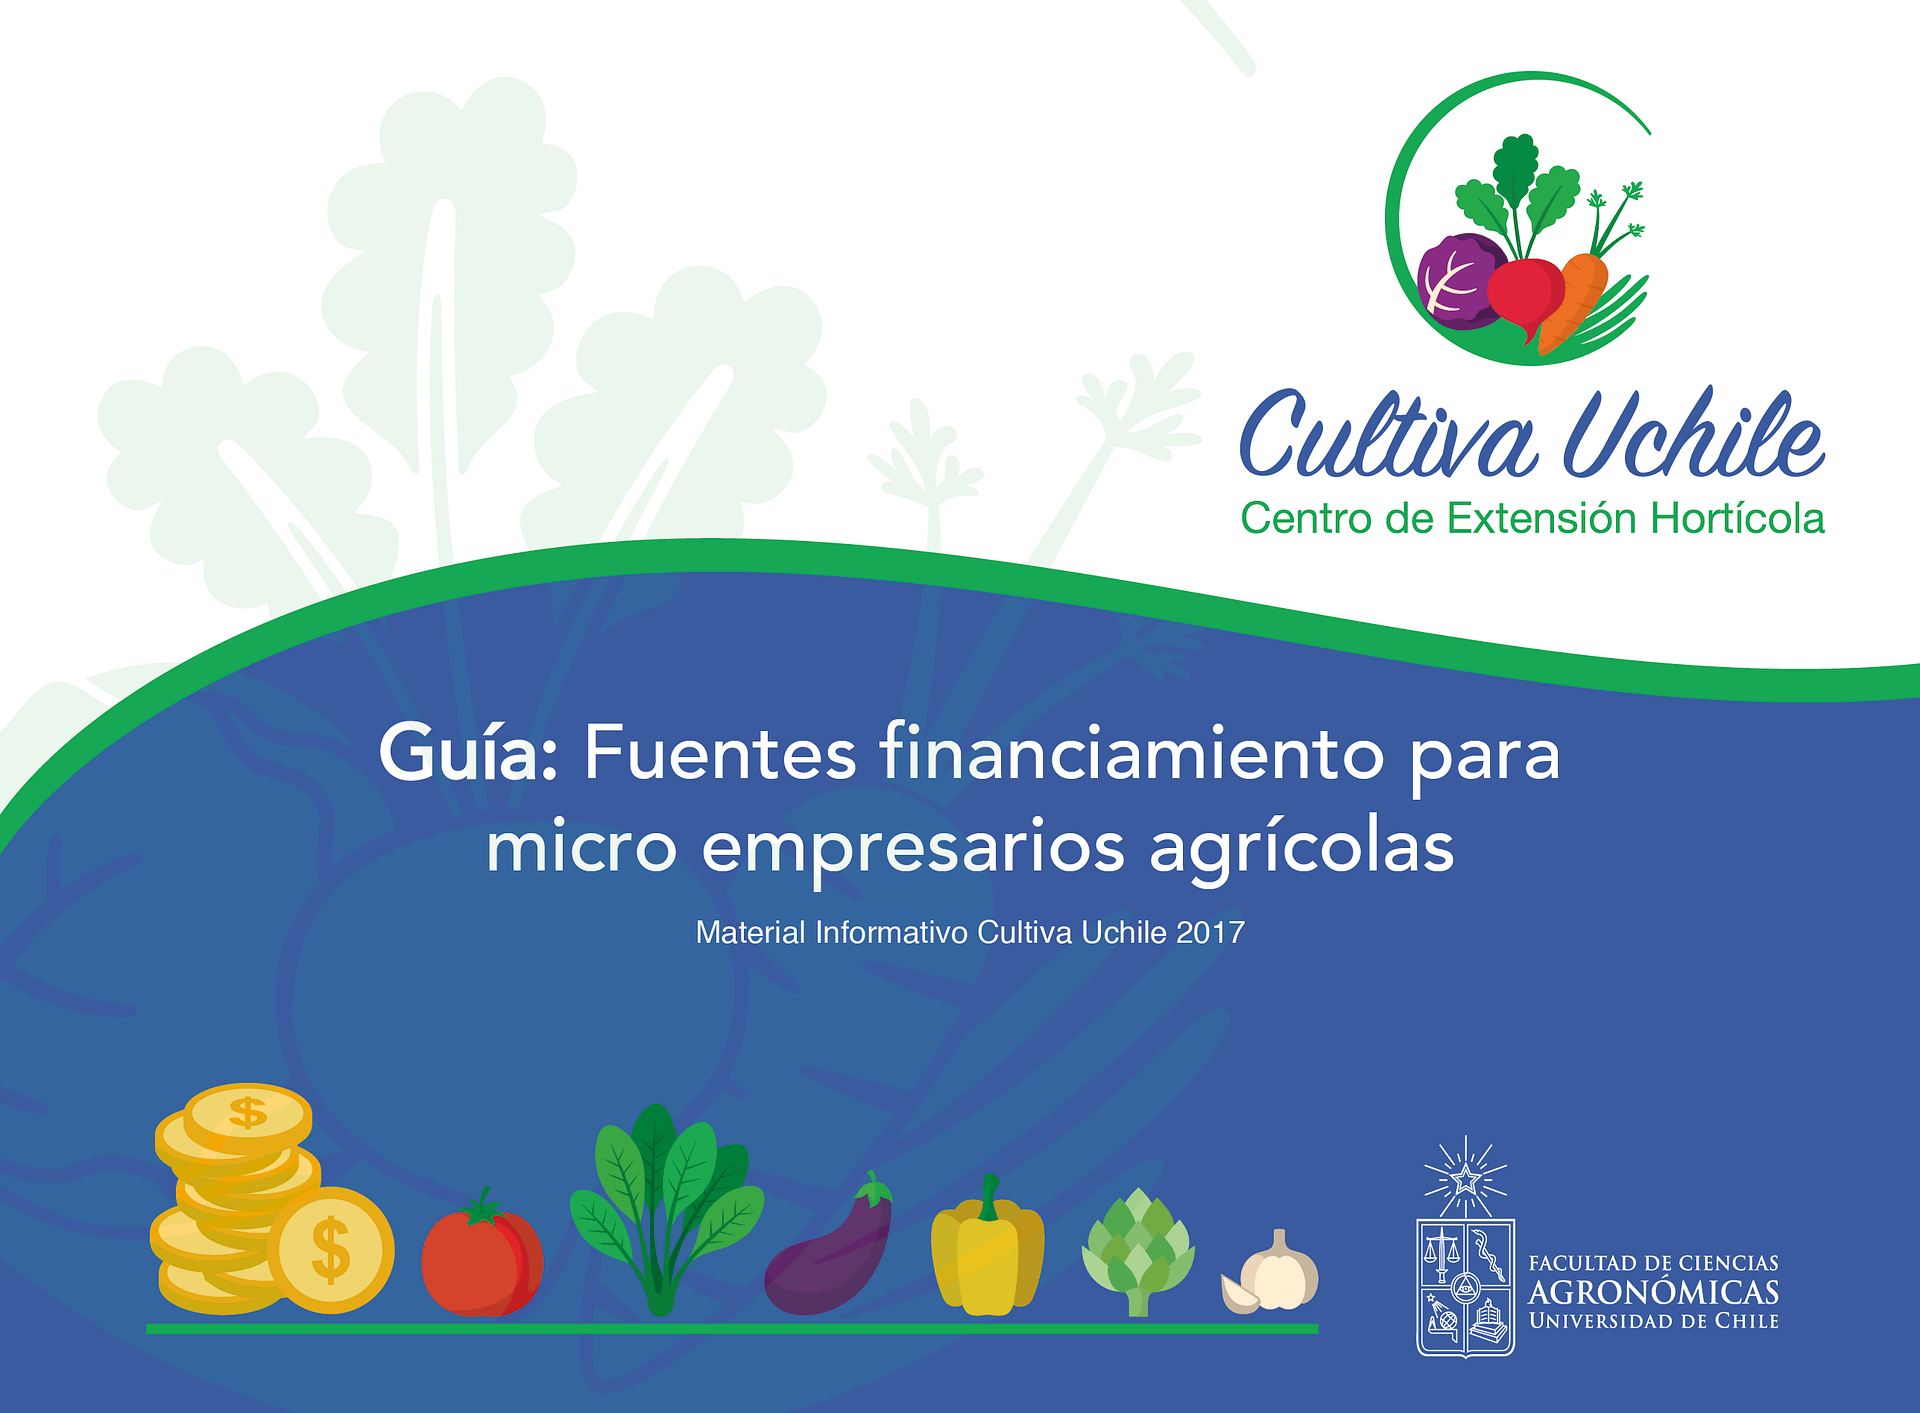 Guía: Fuentes financiamiento para micro empresarios agrícolas.